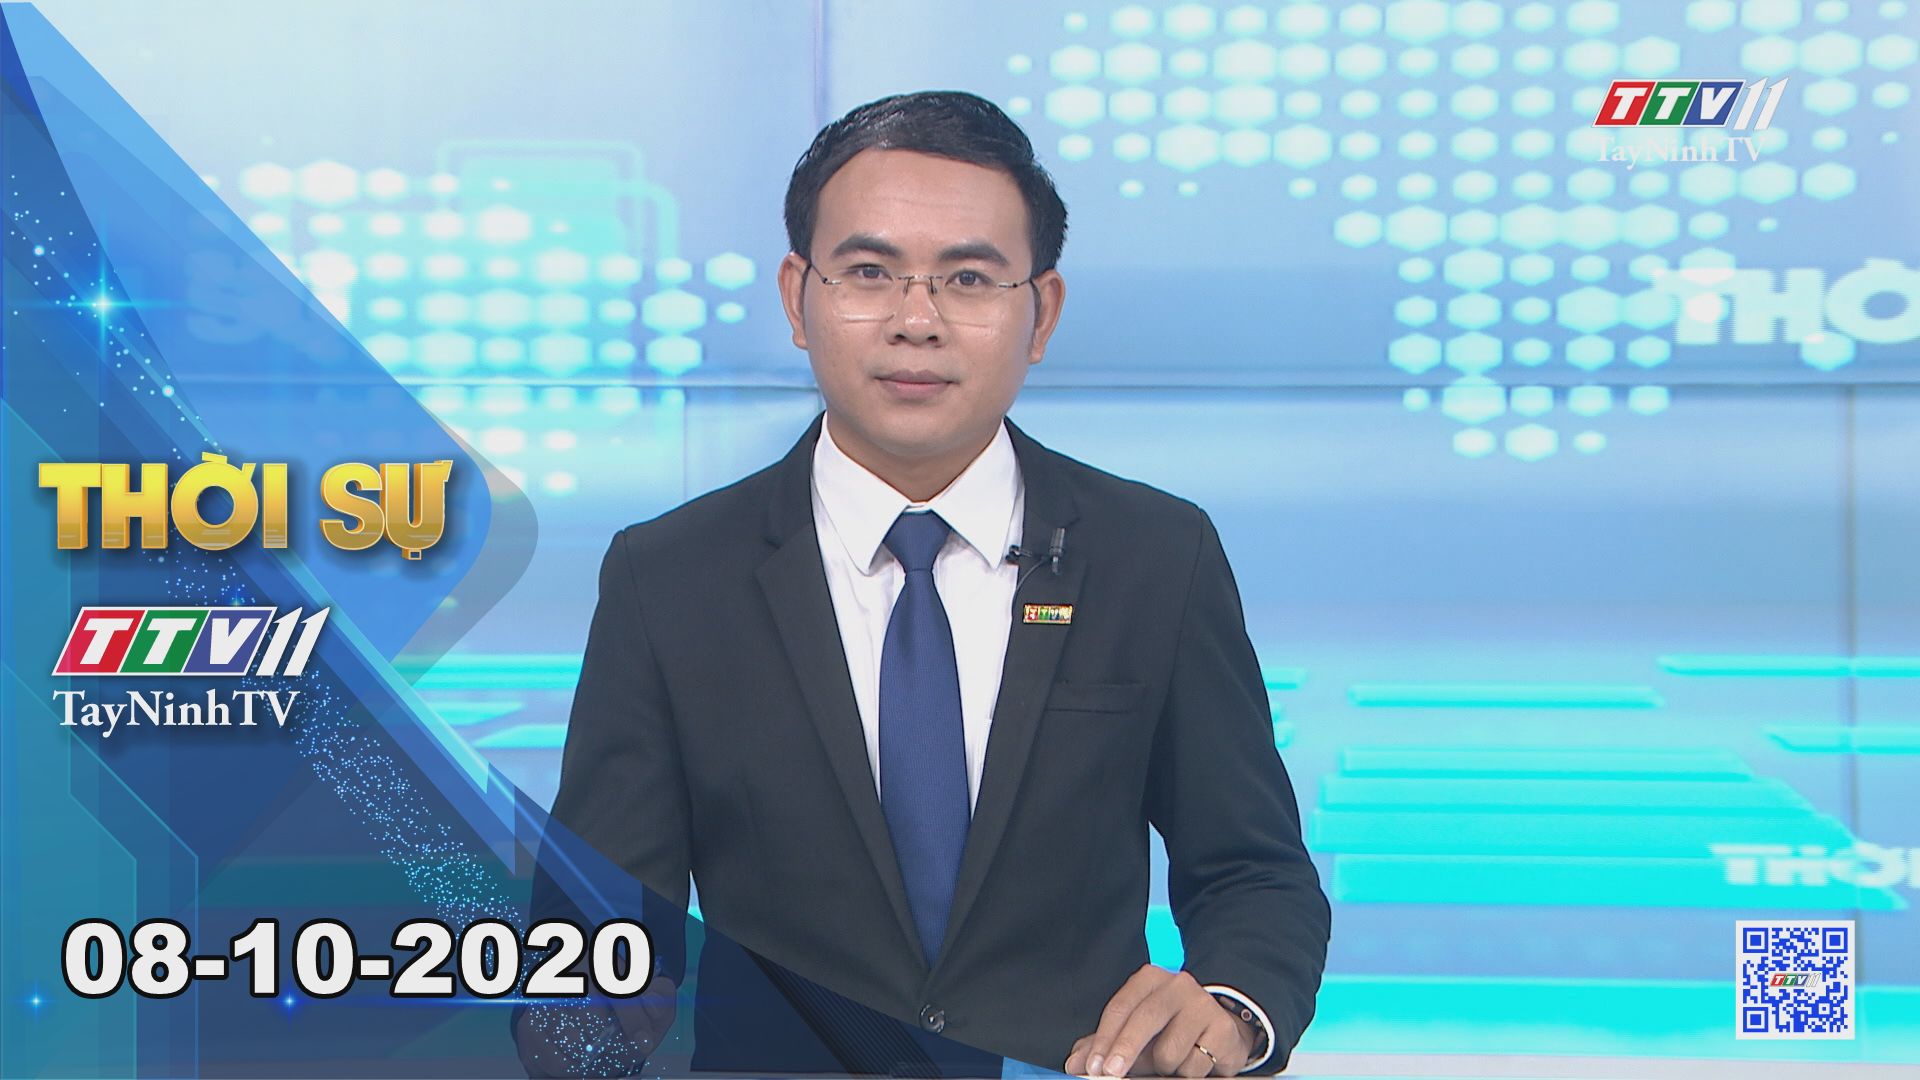 Thời sự Tây Ninh 08-10-2020 | Tin tức hôm nay | TayNinhTV 